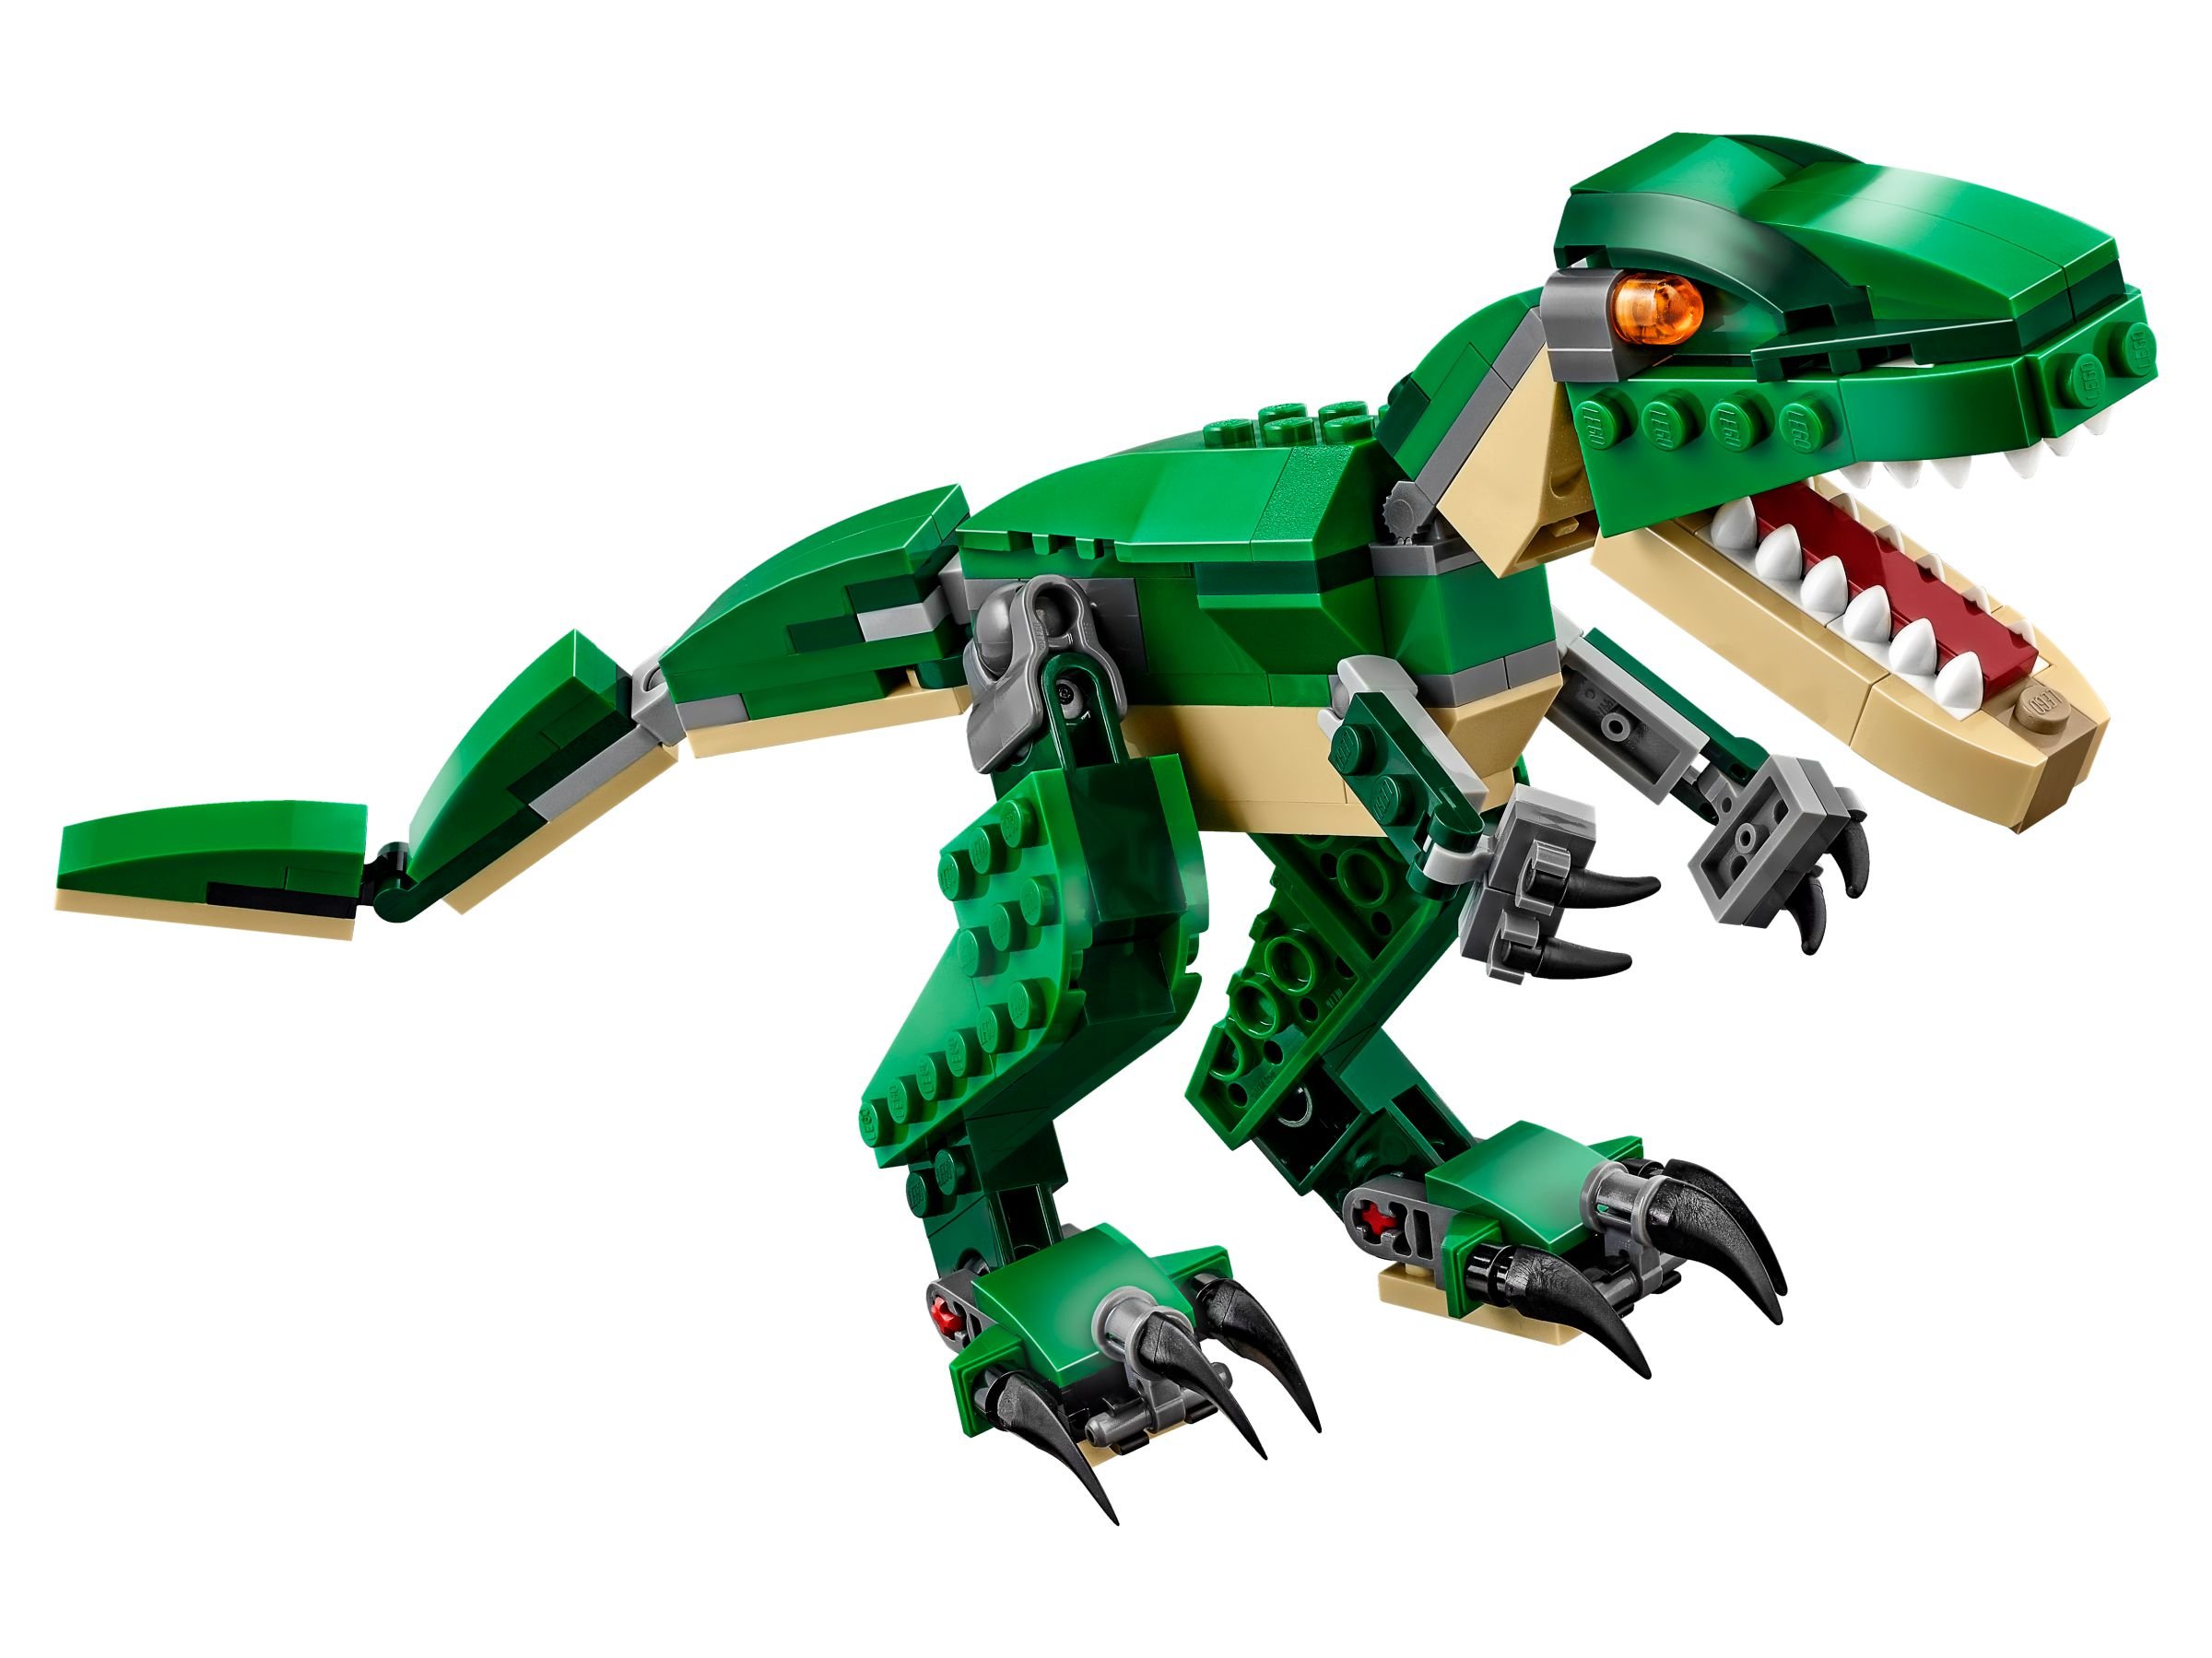 LEGO Creator 31058 Dinosaurier LEGO_31058_alt2.jpg